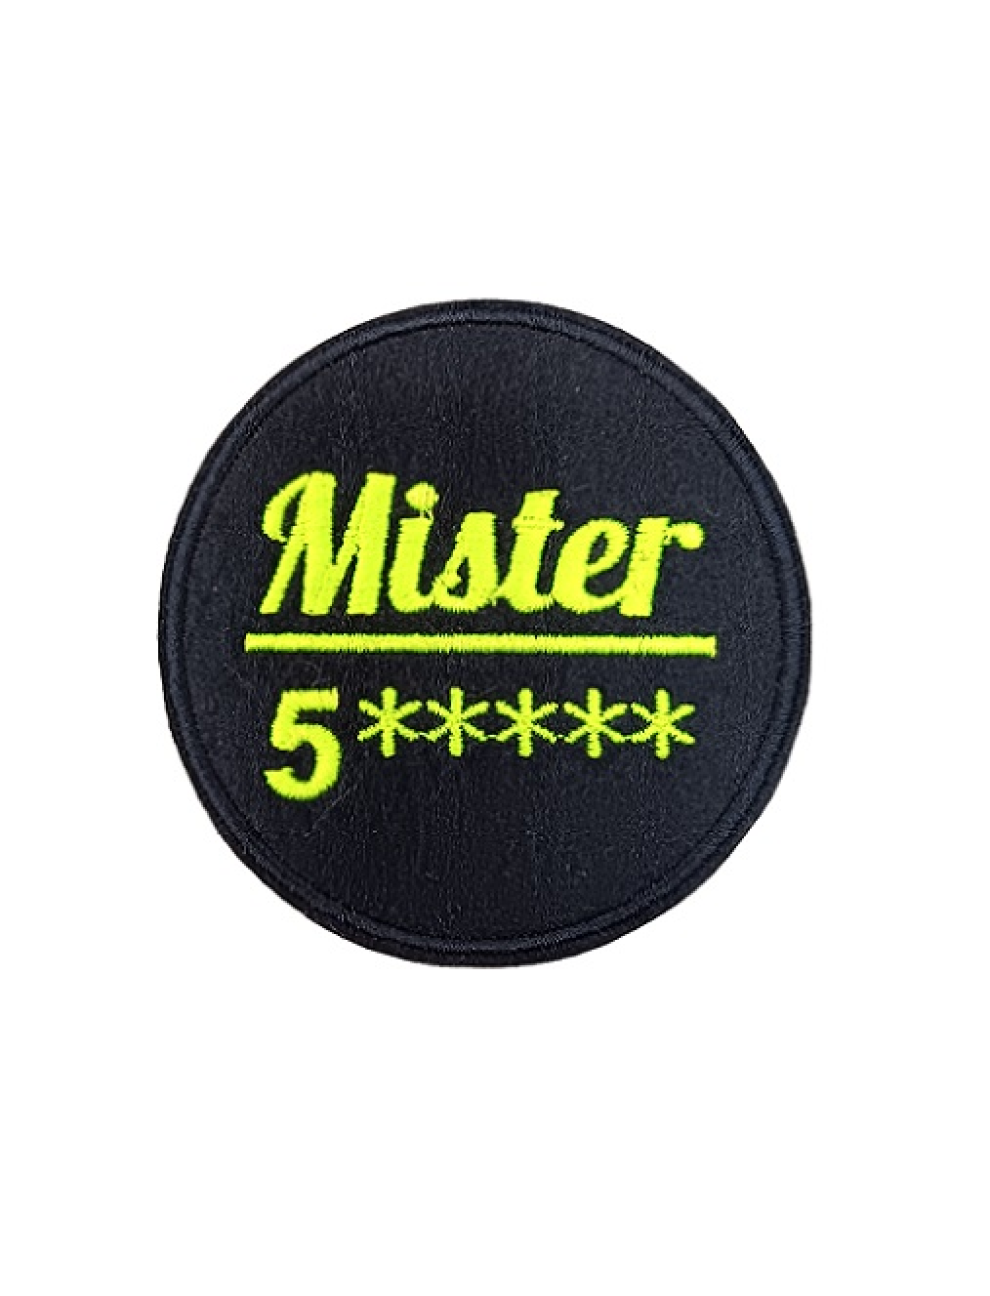 Mister 5*****